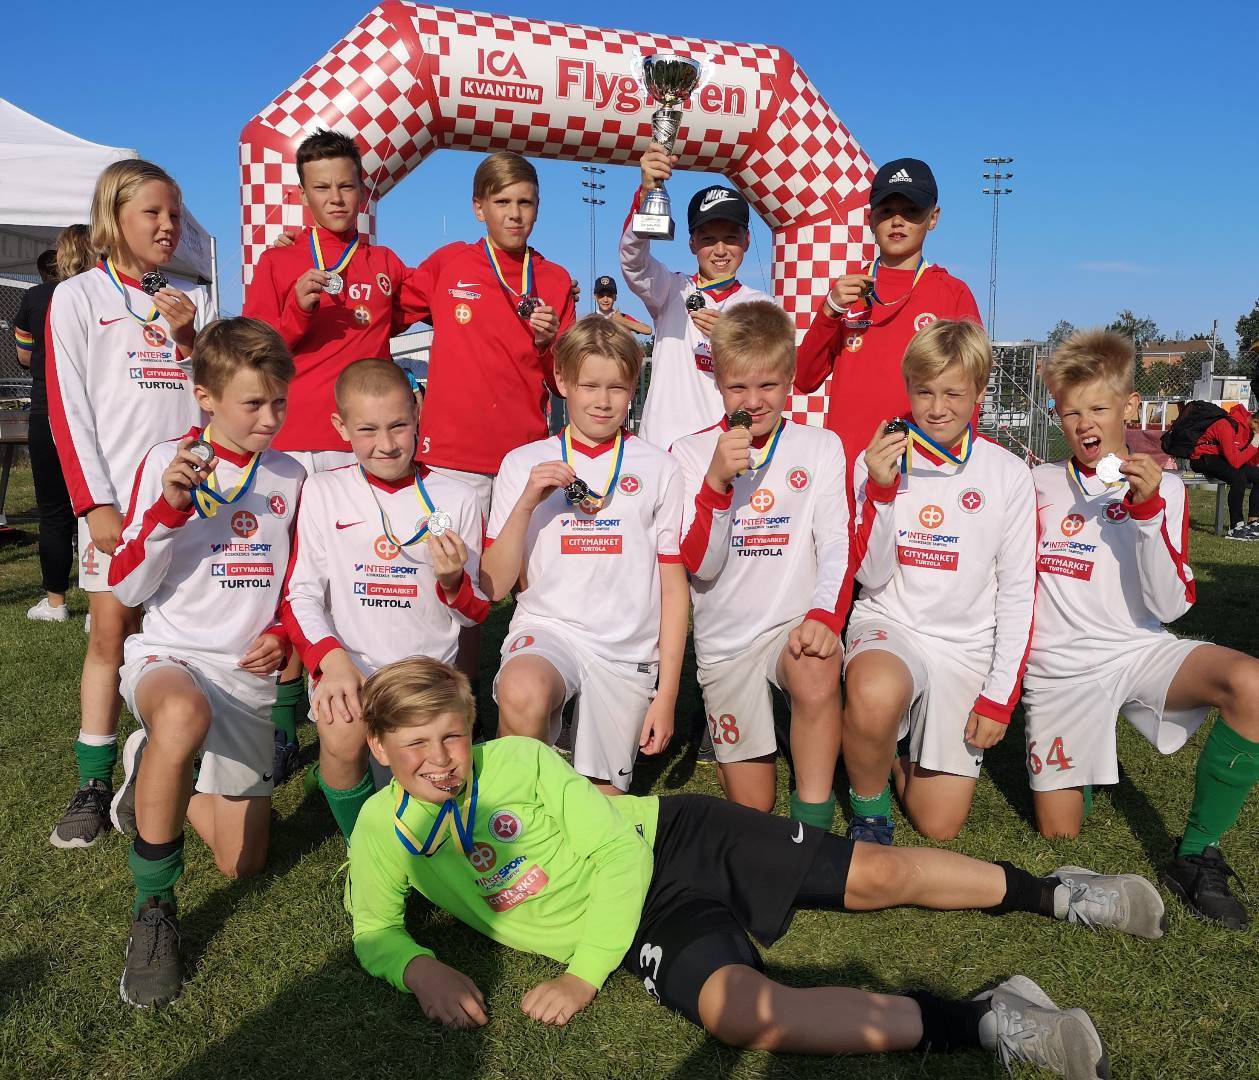 TPV P13 palkinnoille Flygfyren Sommarcup 2019 -turnauksessa Ruotsissa